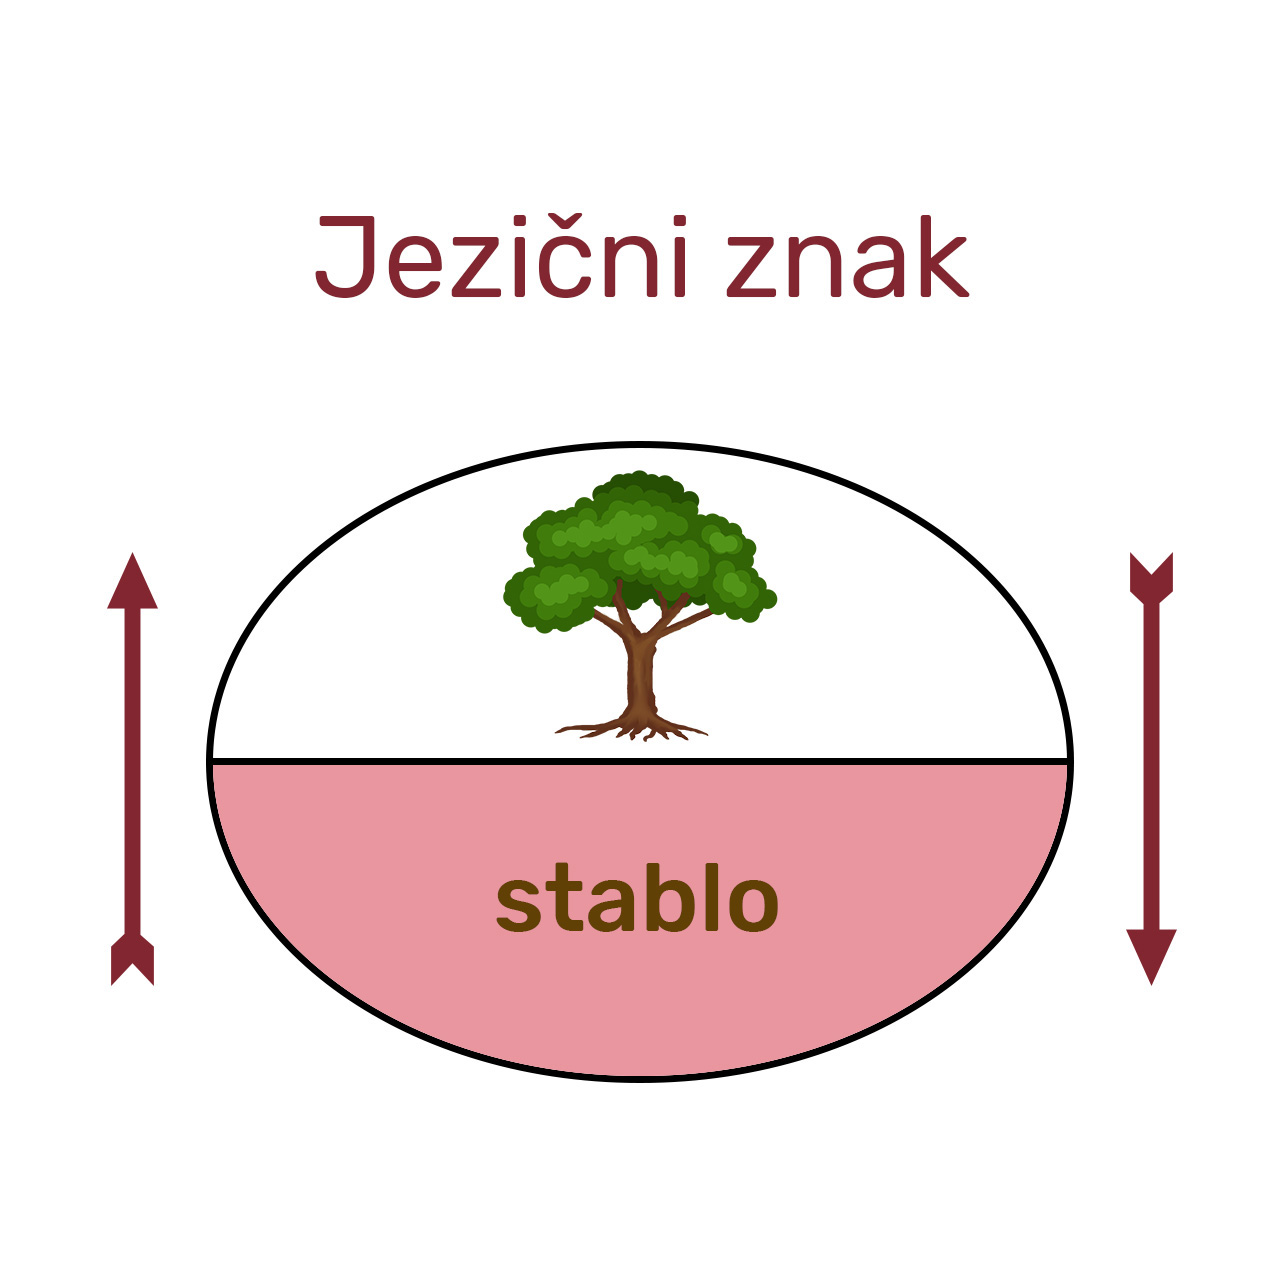 Jezični znak prema de Saussureovu modelu – slika stabla u svijesti govornika koju priziva sam akustički niz glasova – stablo.